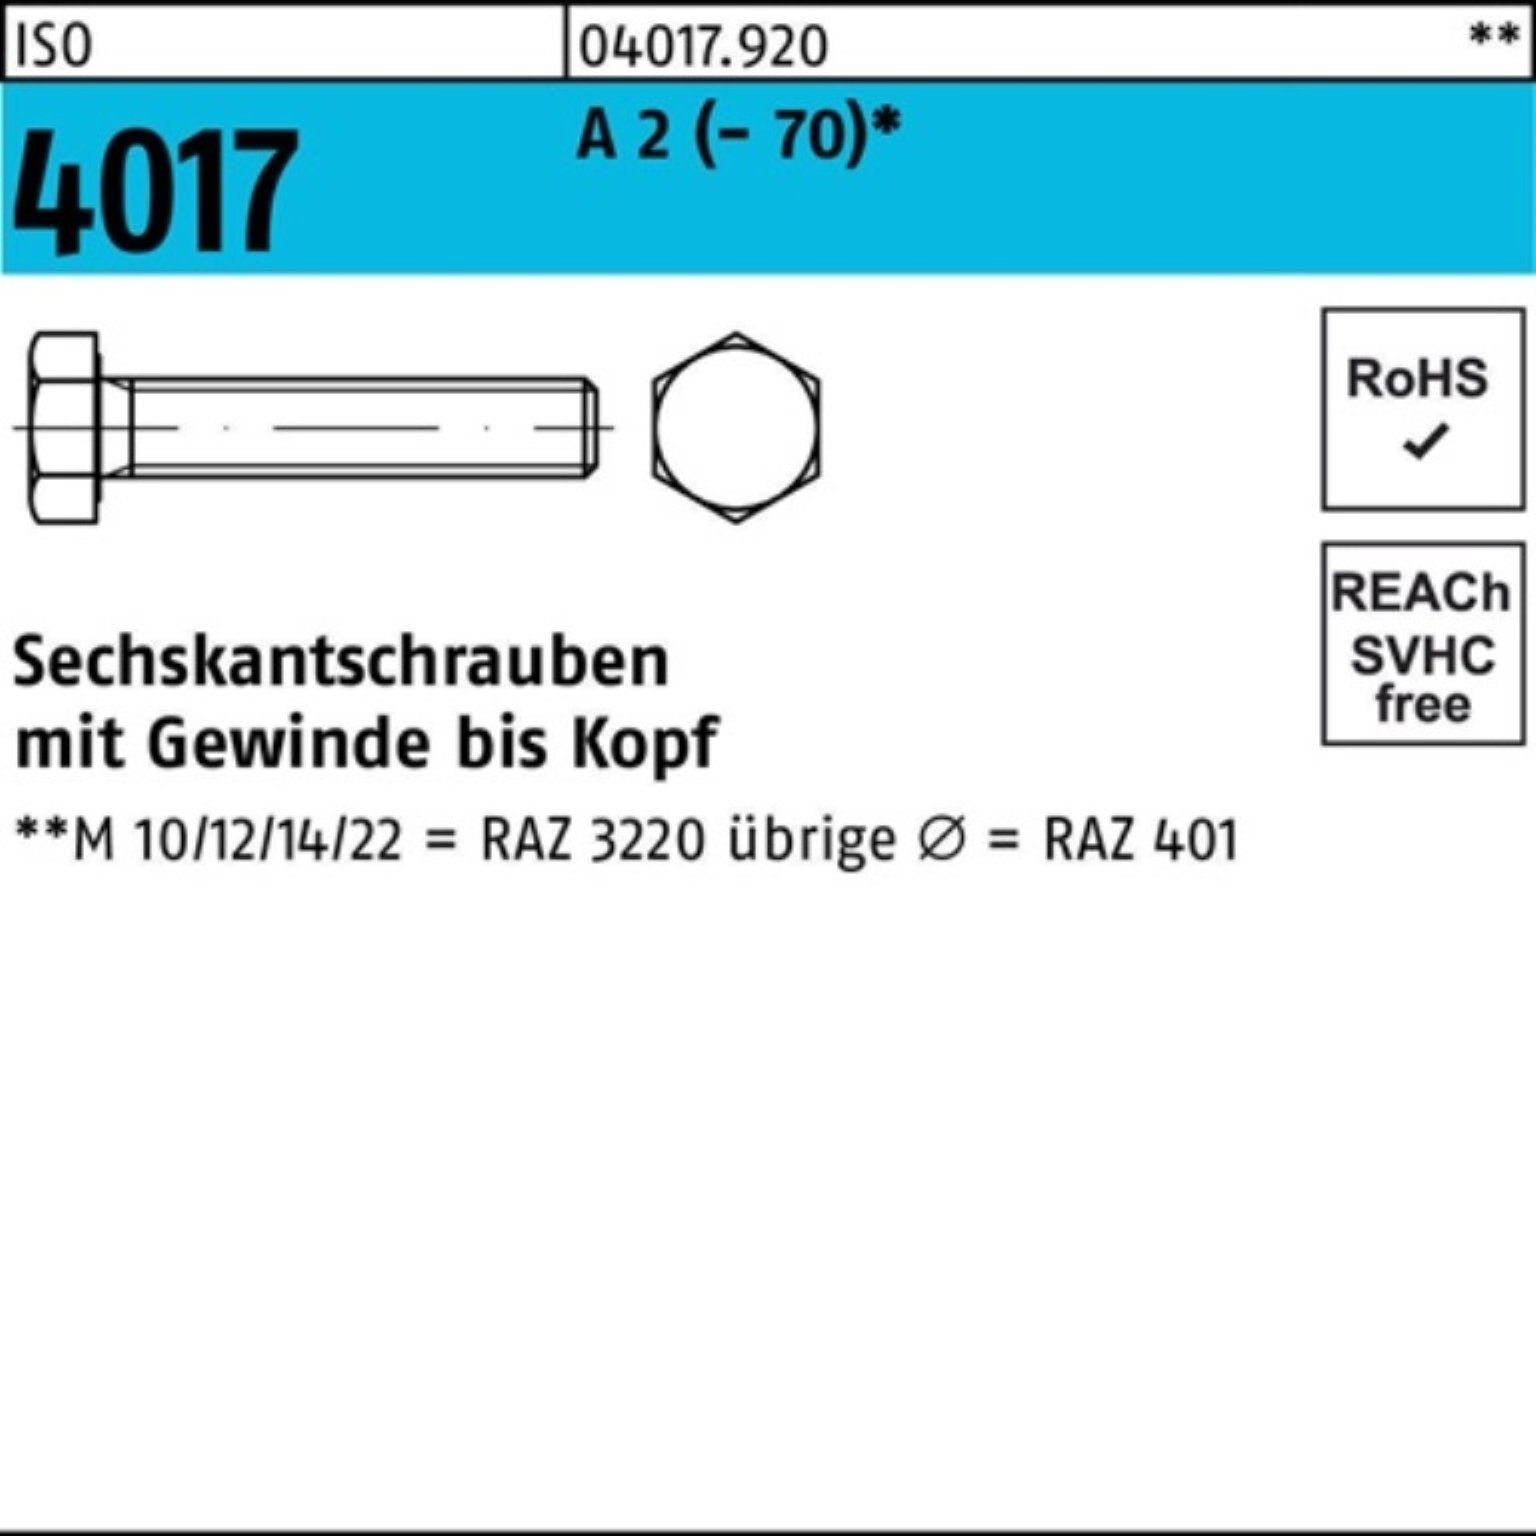 Bufab Sechskantschraube 100er Pack Sechskantschraube ISO 4017 VG M18x 140 A 2 (70) 1 Stück